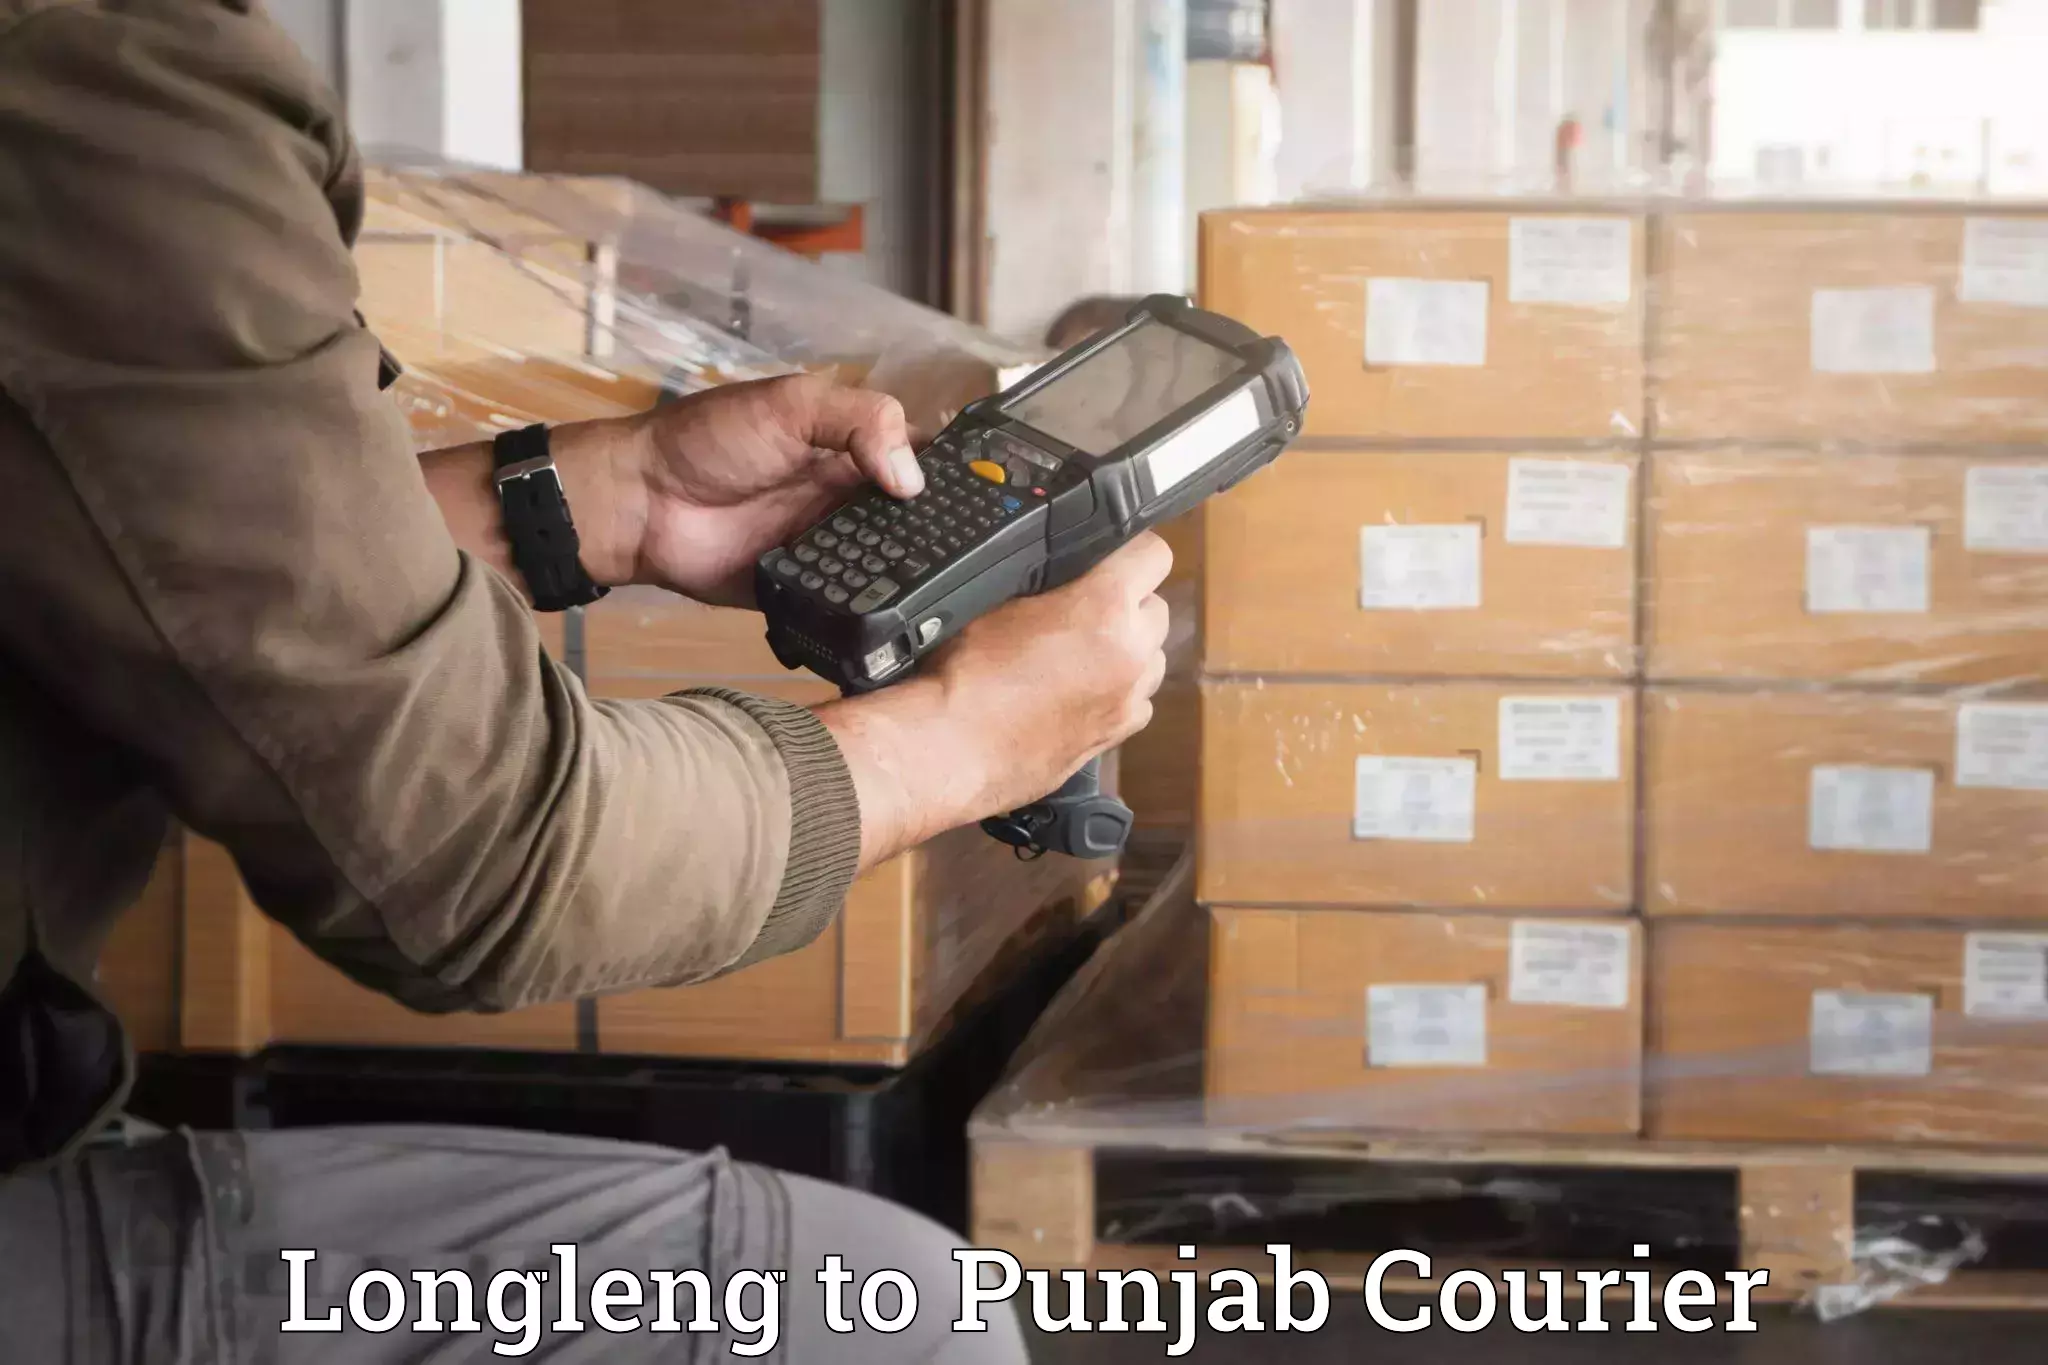 Furniture transport service Longleng to Punjab